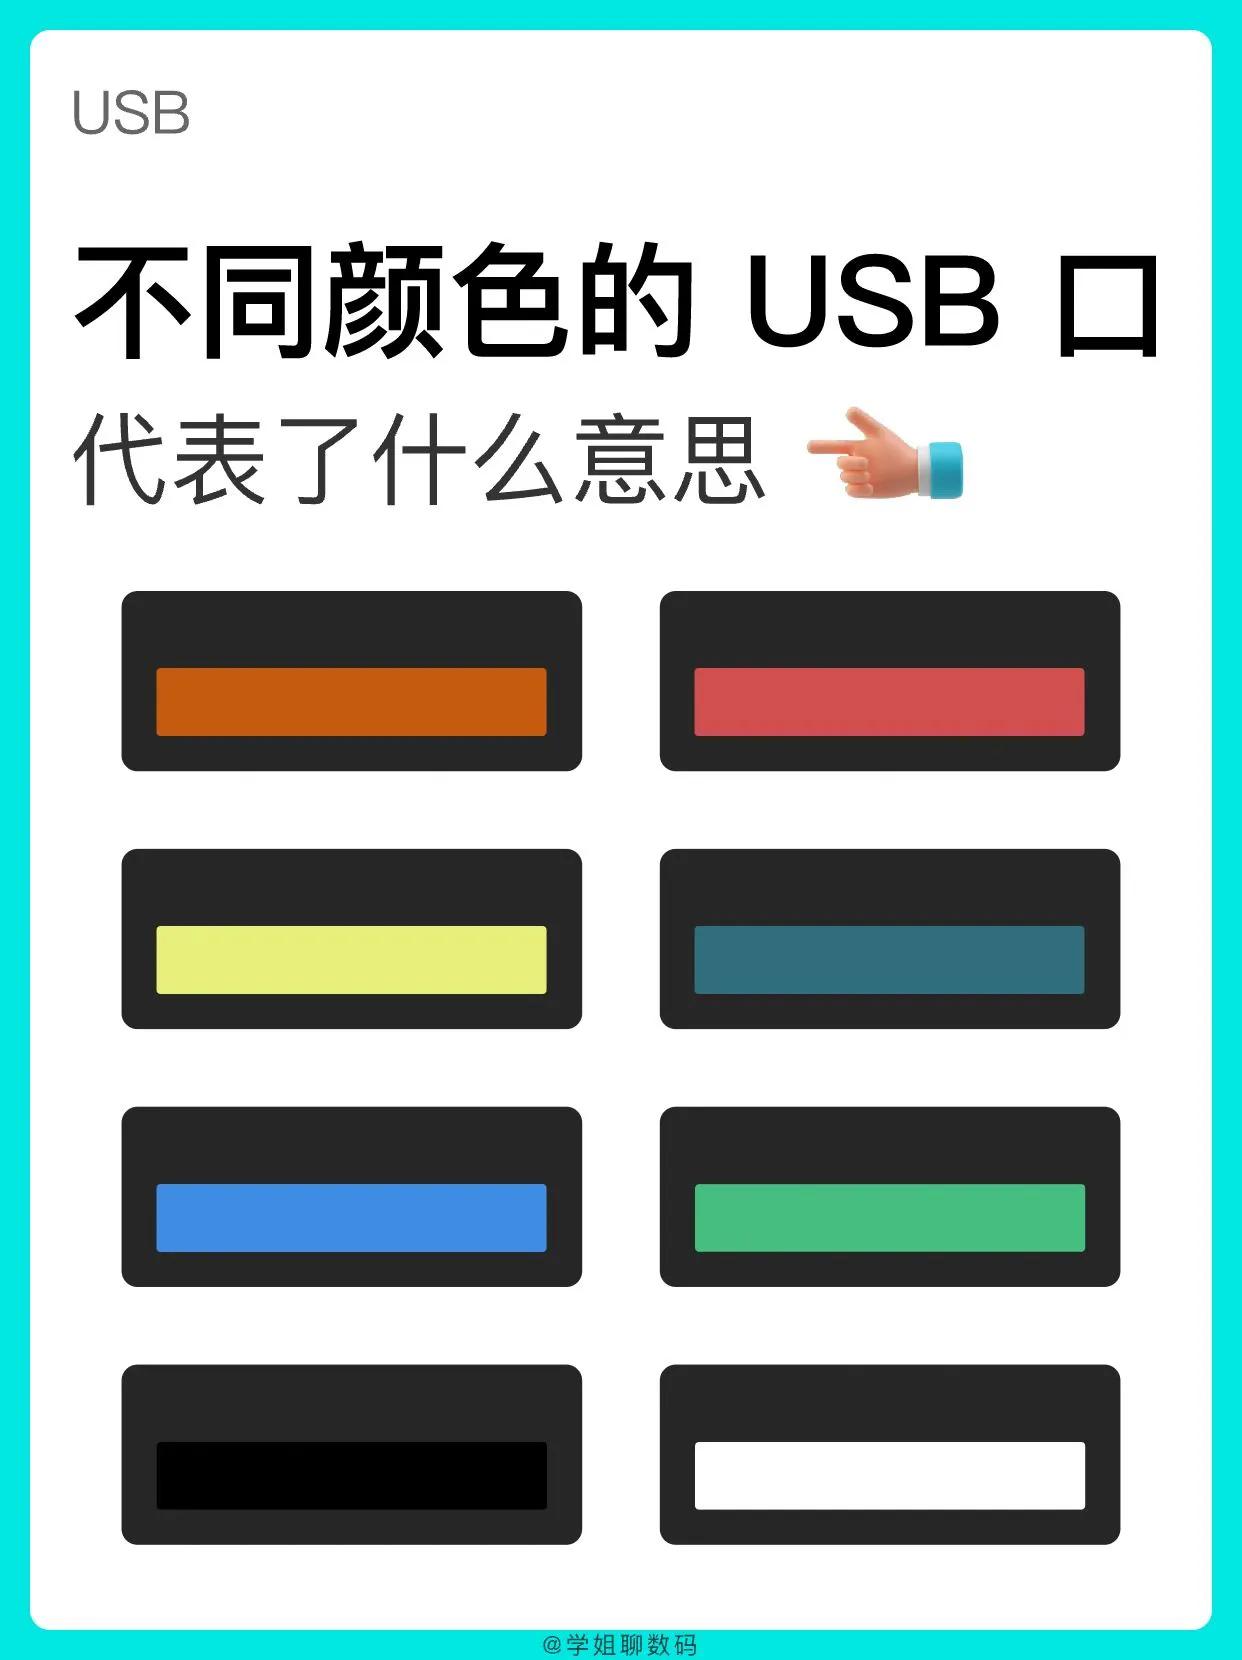 原来不同颜色的 USB 口也是有区别的